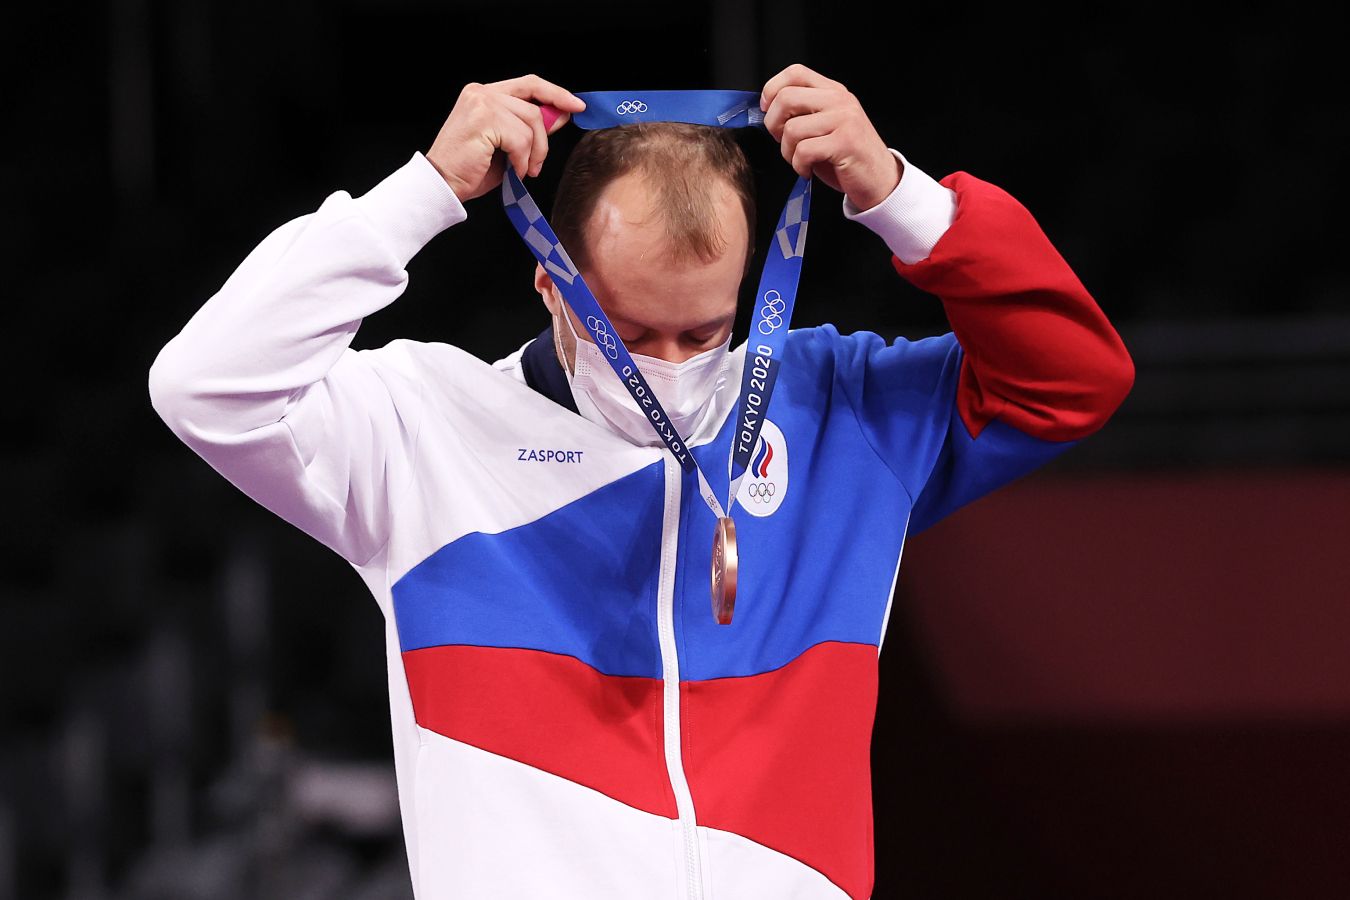 Летние игры россия медали